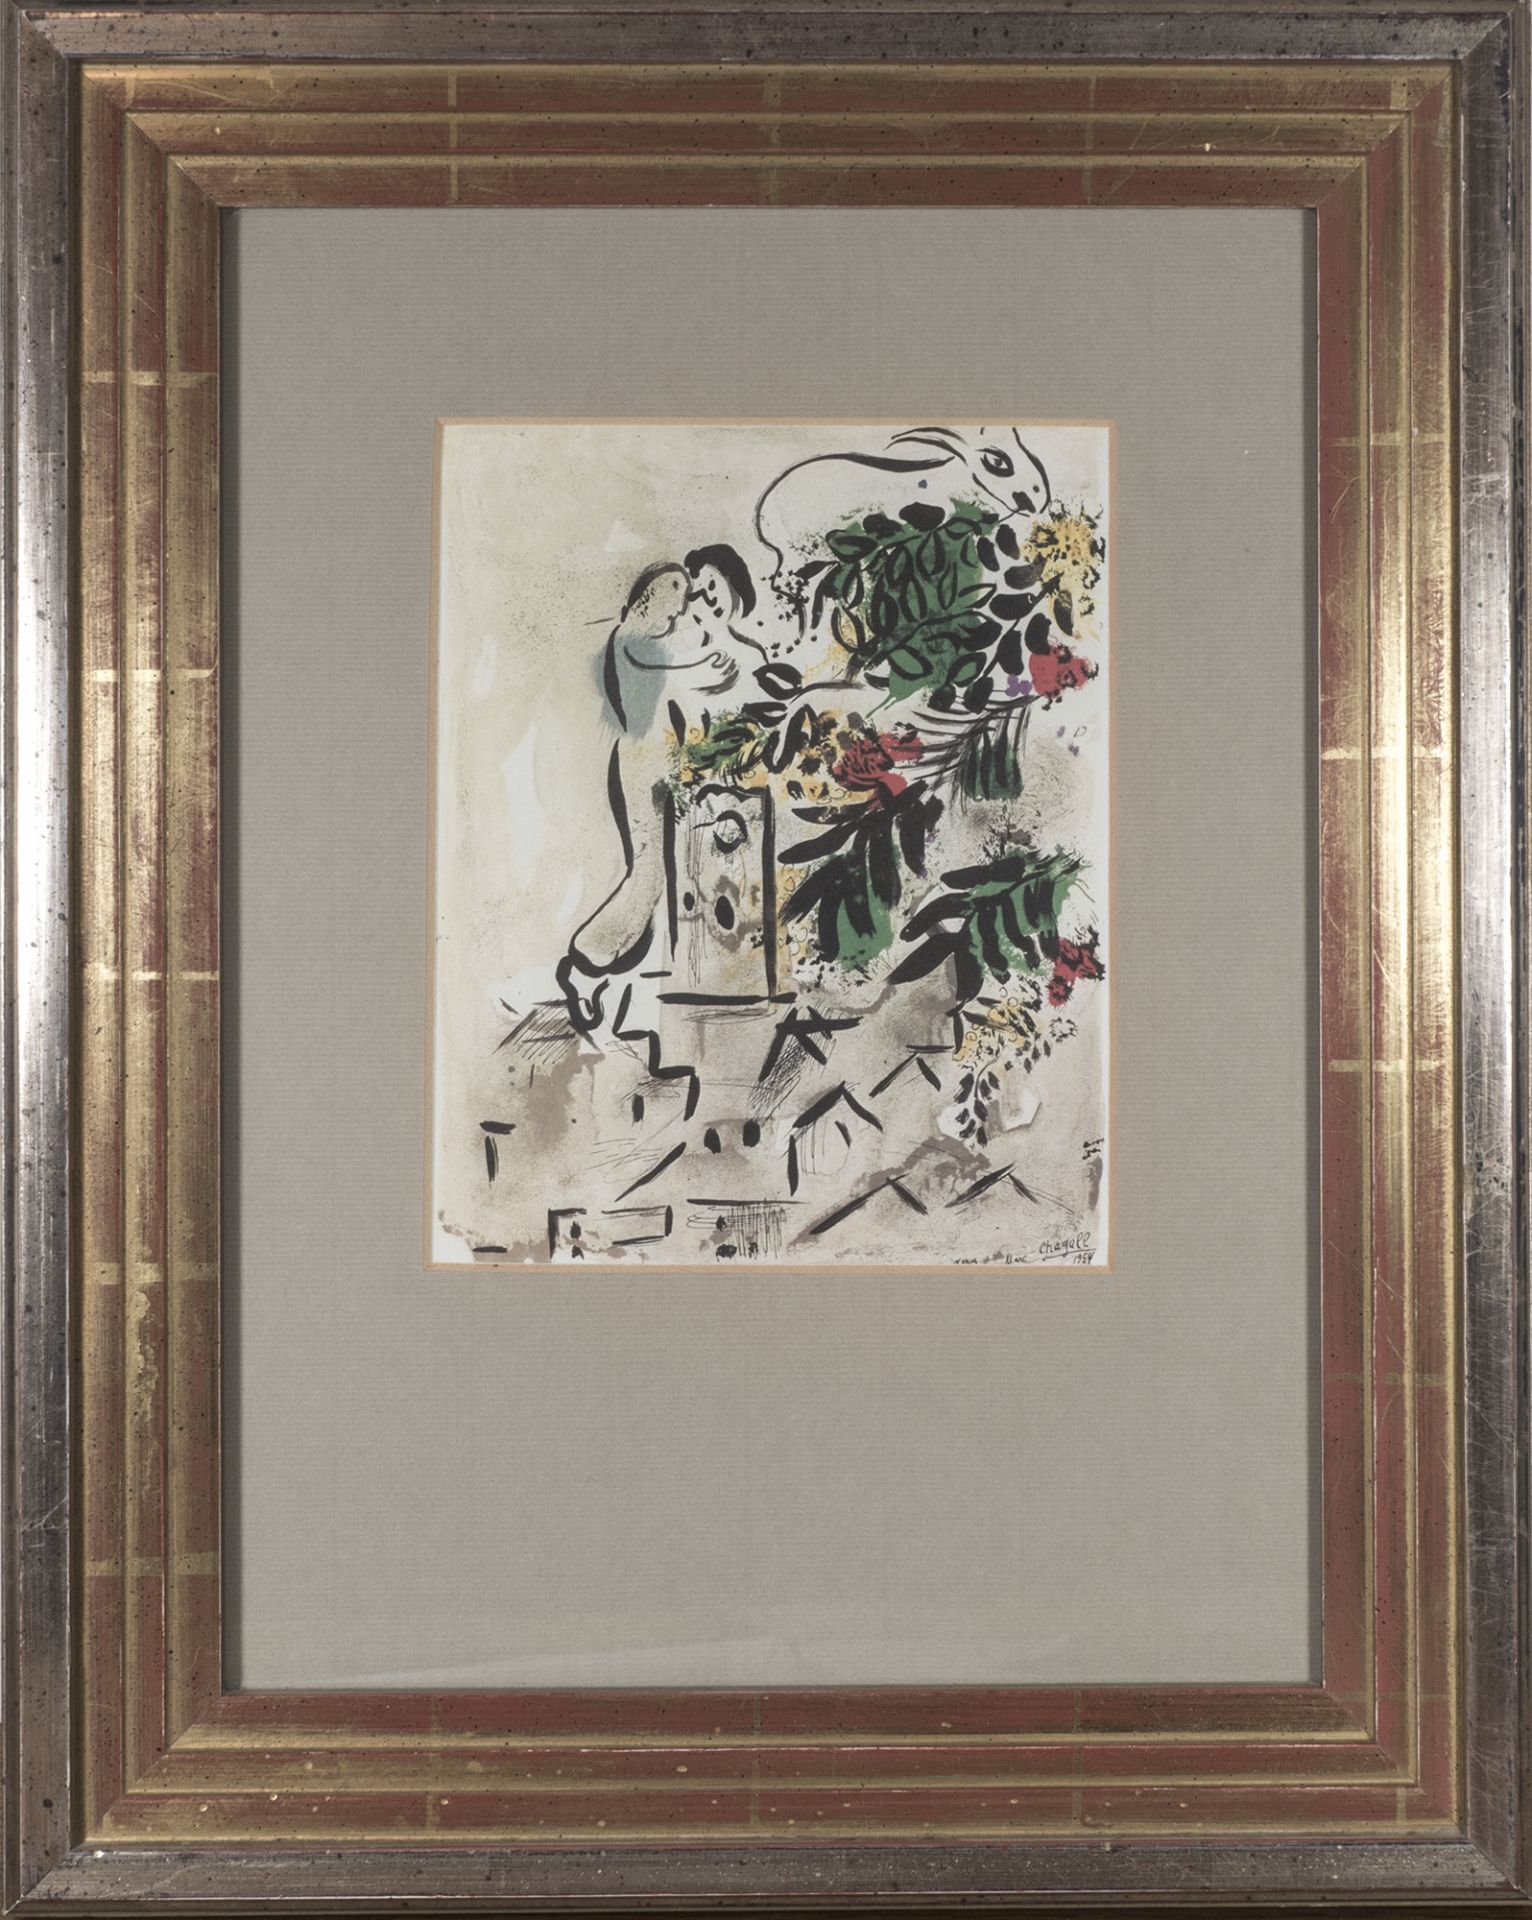 Marc Chagall 1954, "Vence" Cite des Arts et des Fleurs, 1954 . Druck nach einem Plakat für die Stadt